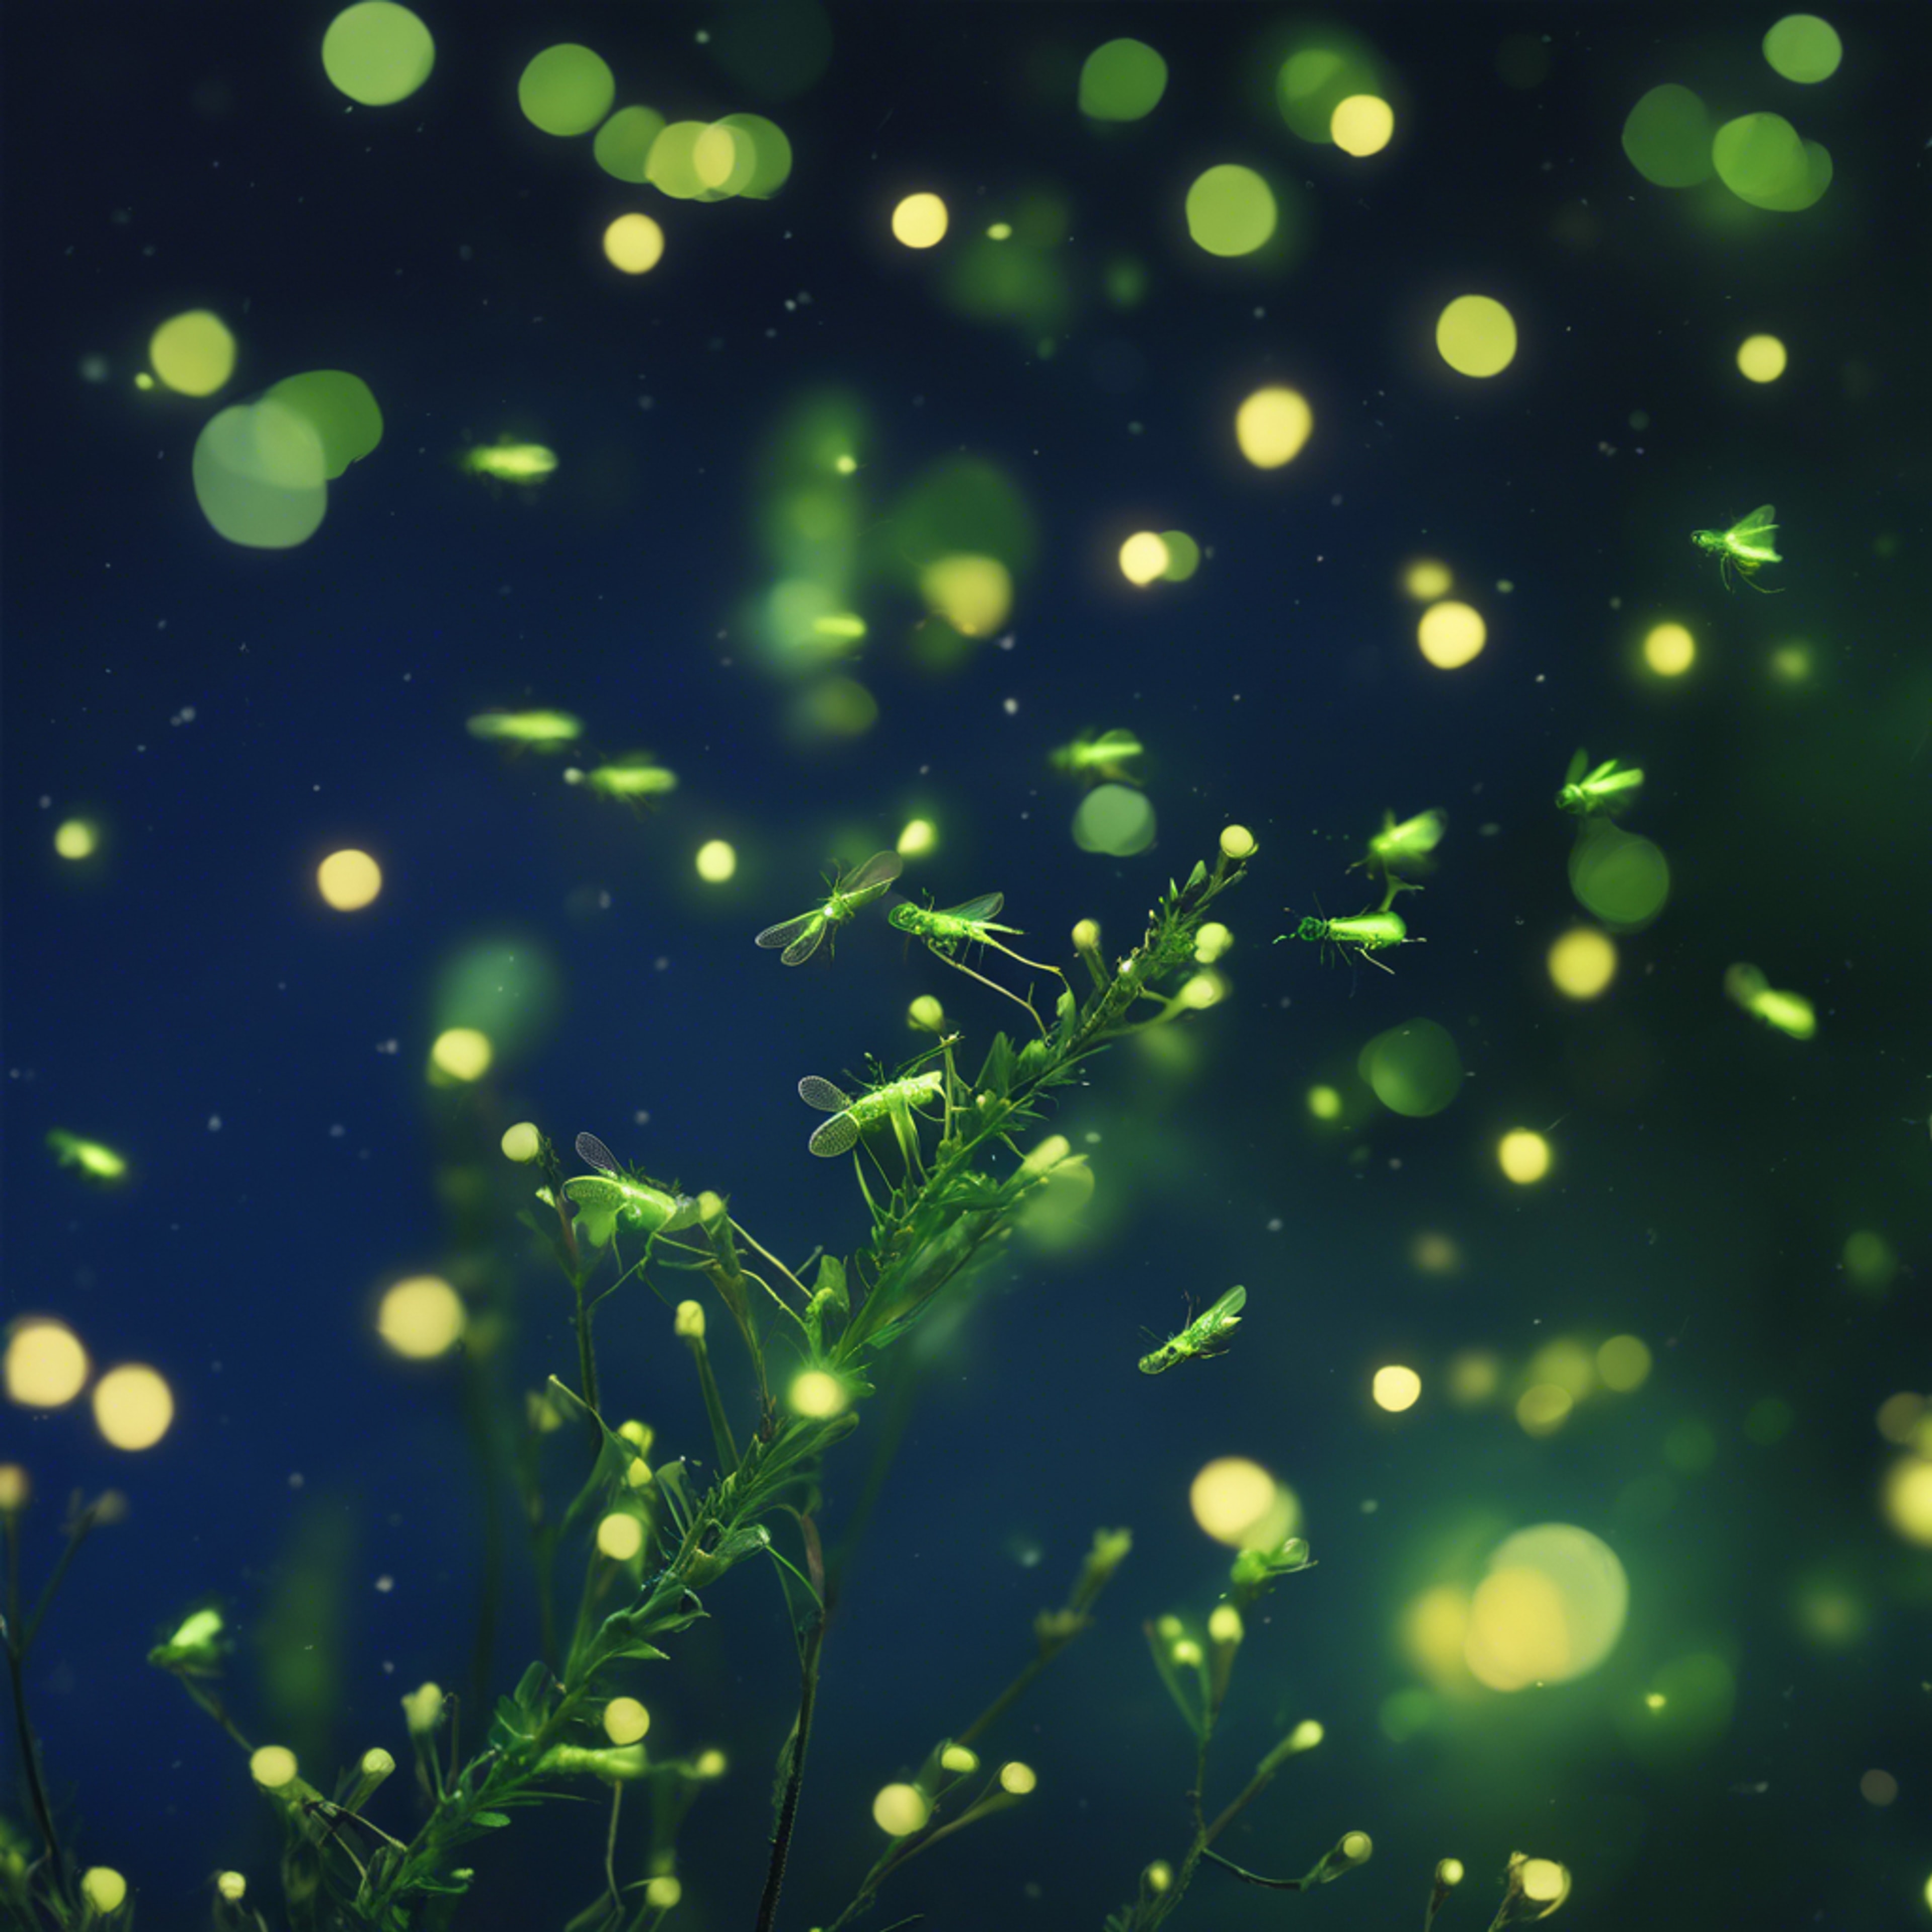 A myriad of emerald green fireflies flickering against a deep twilight blue sky. Hintergrund[603476c68fd84f259627]